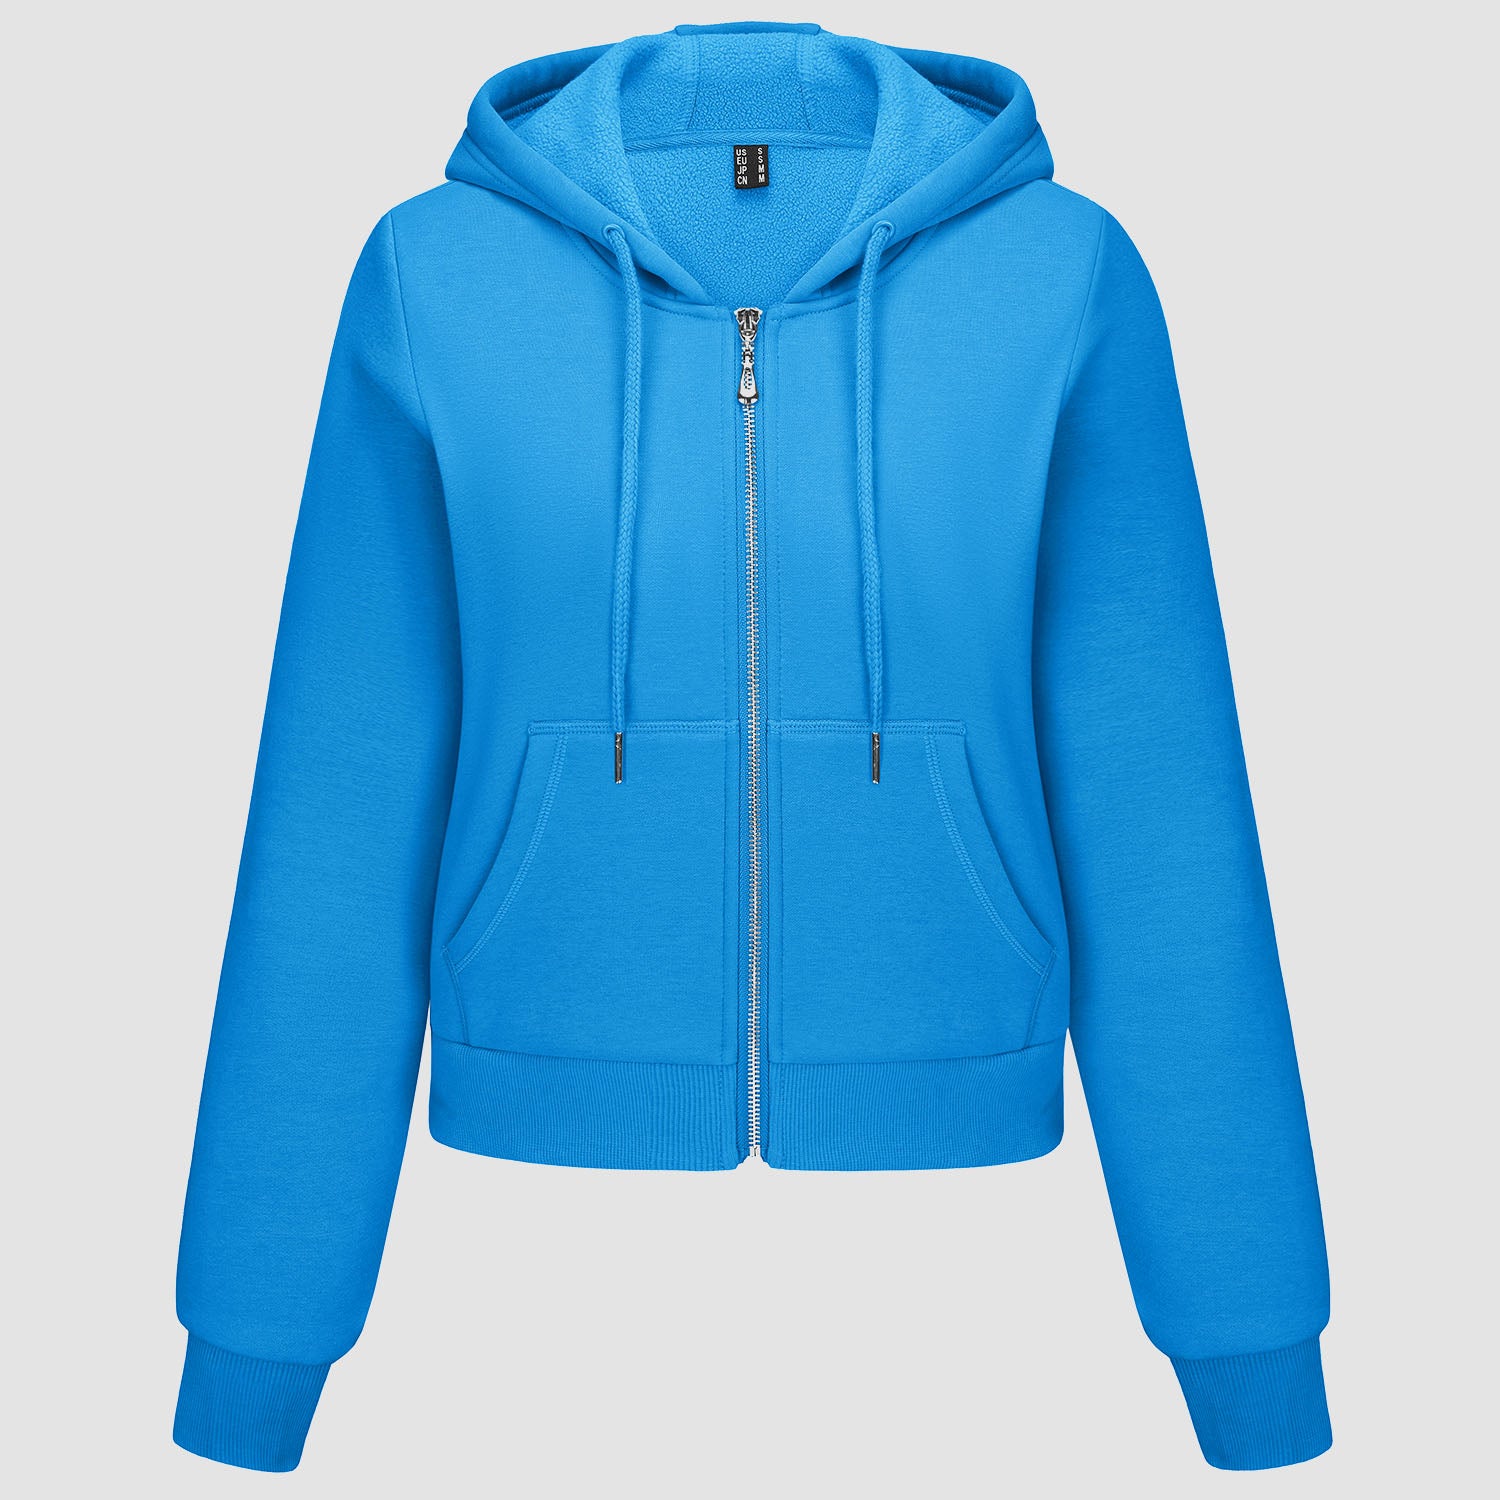 Women's Hoodie Jacket Fleece Lined Crop Tops Full Zip Hoodie For Winter